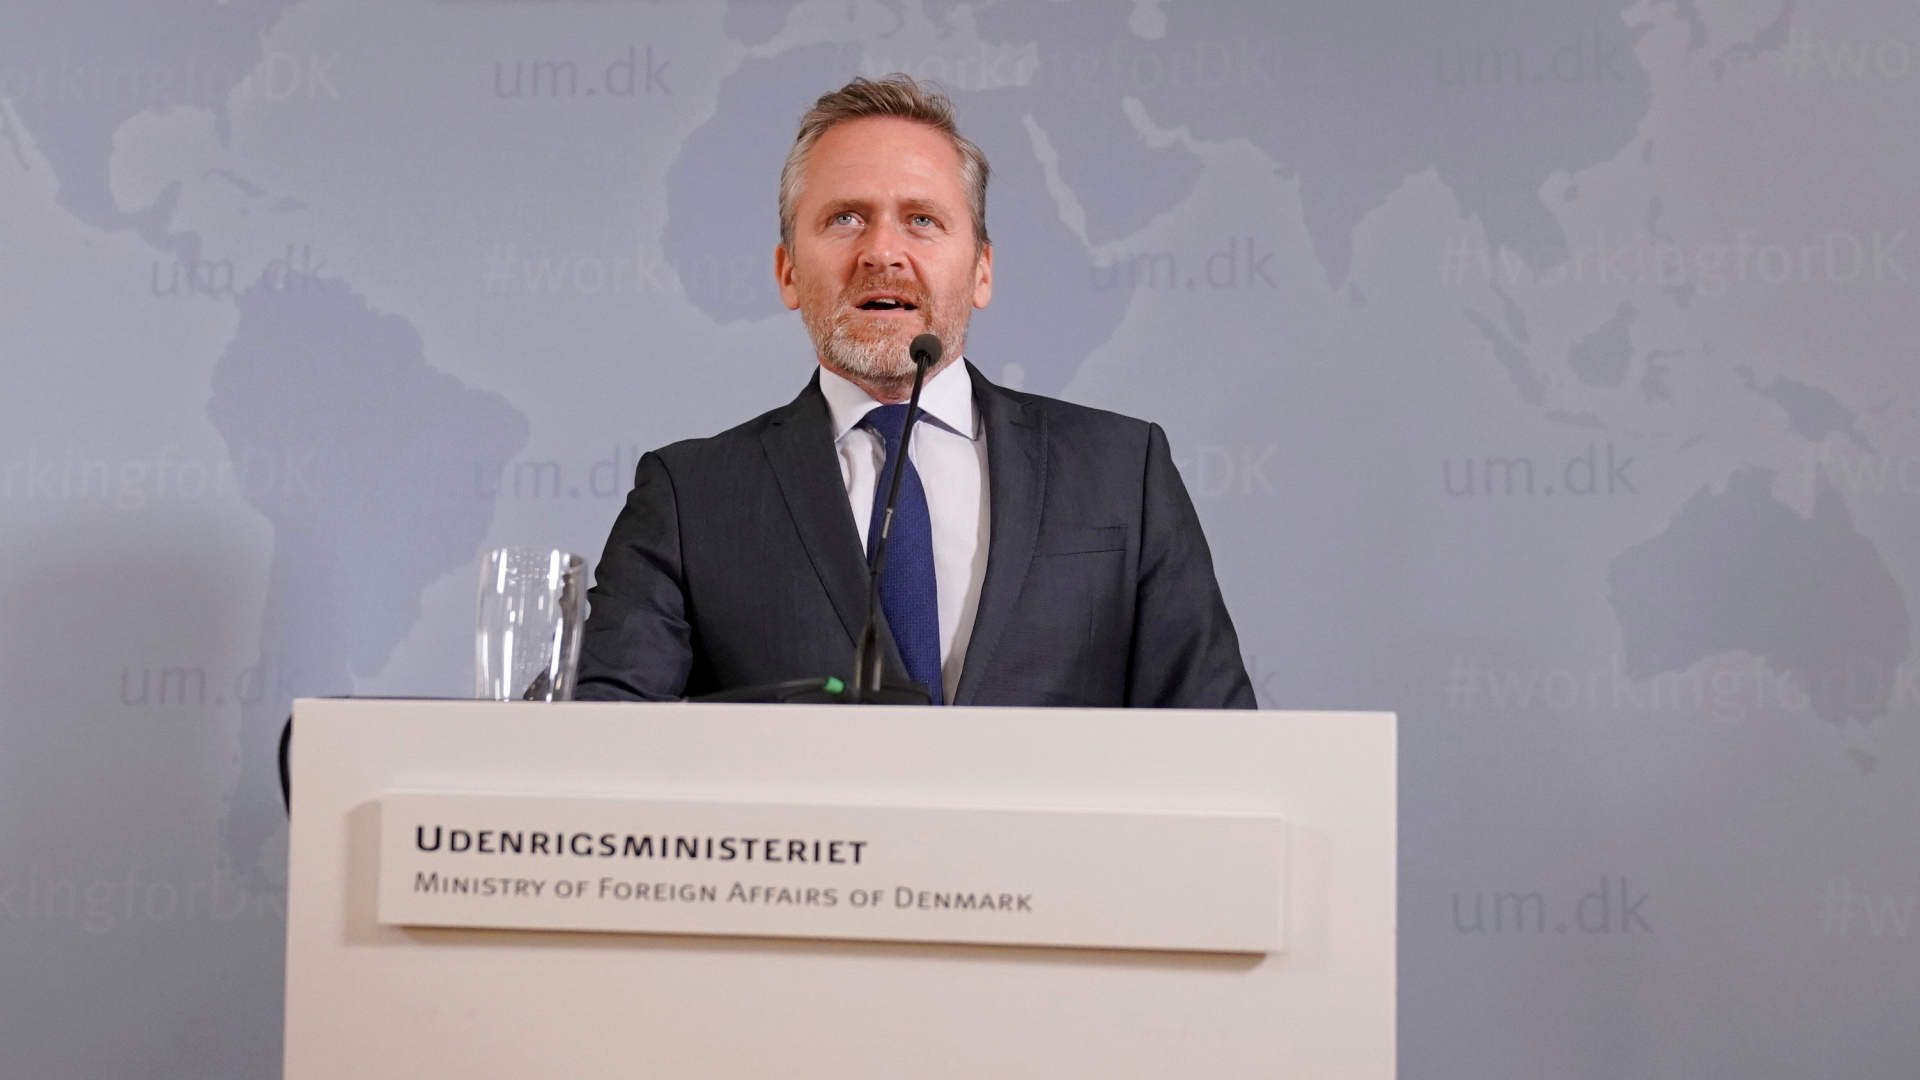 Dänemark wirft Iran Anschlagspläne vor